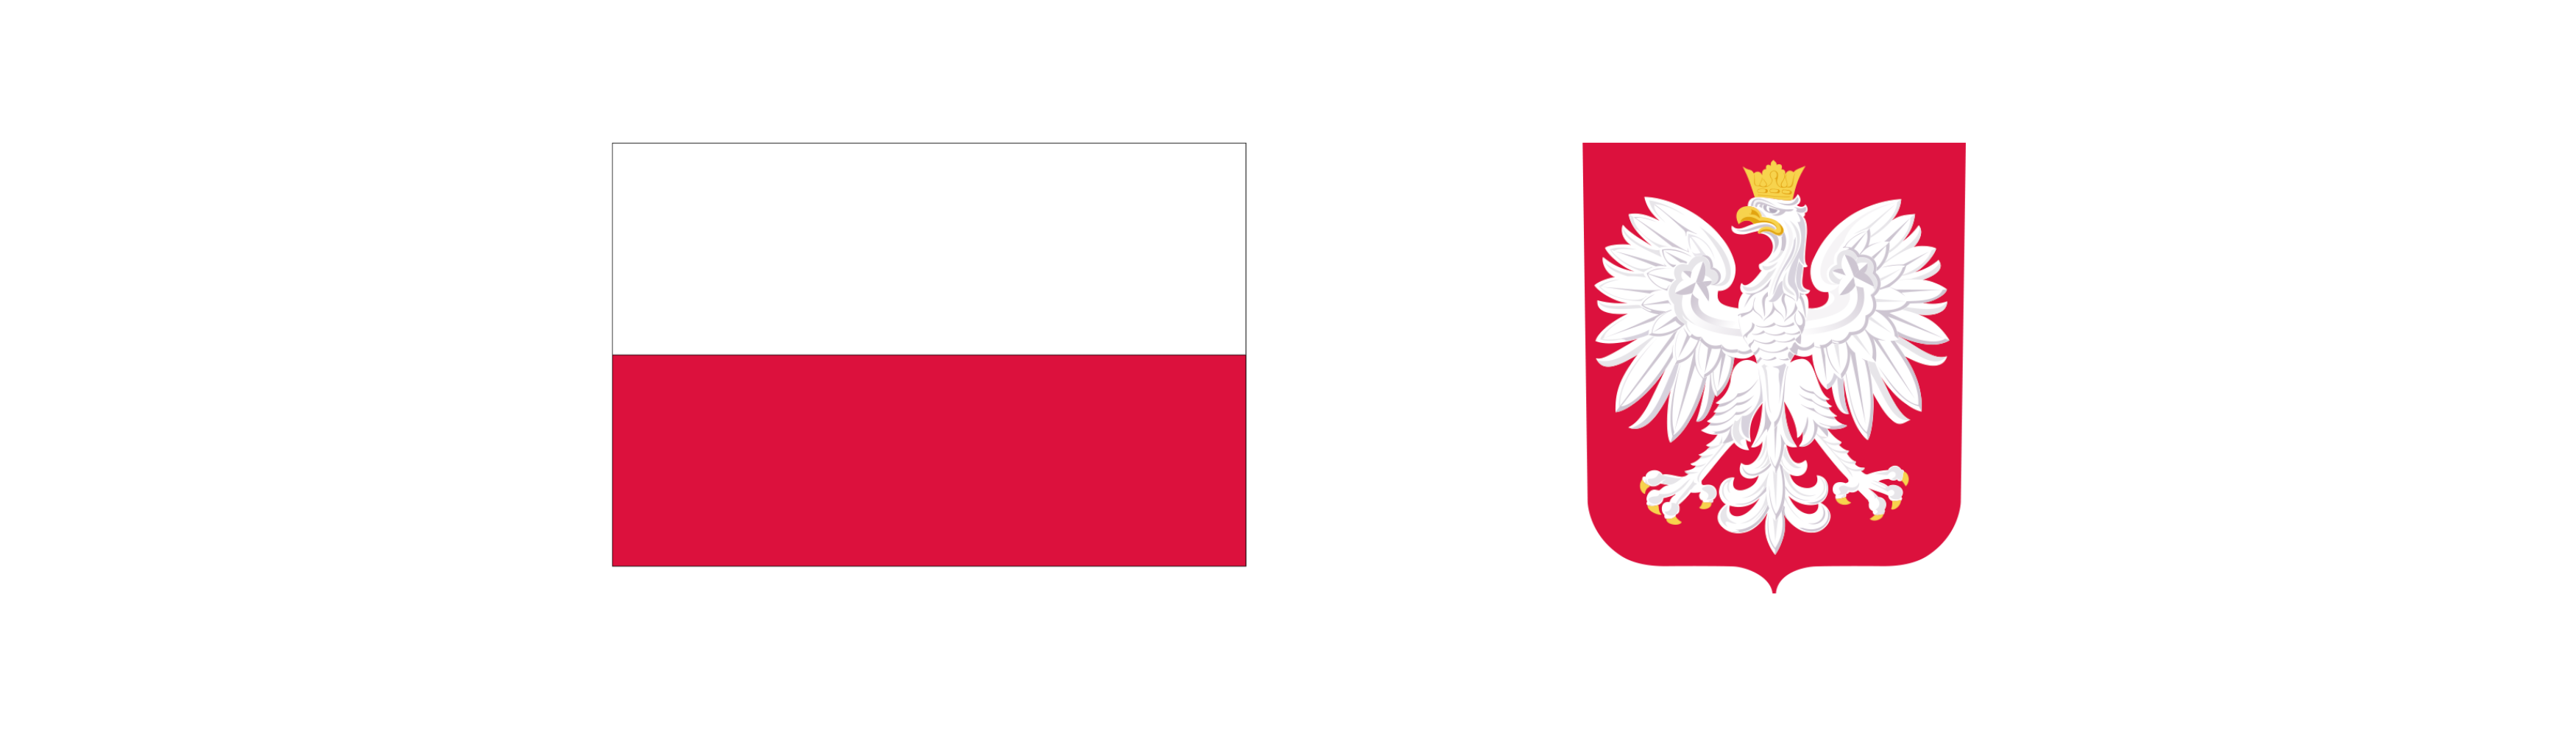 loga - Flaga Polski - Godło Polski